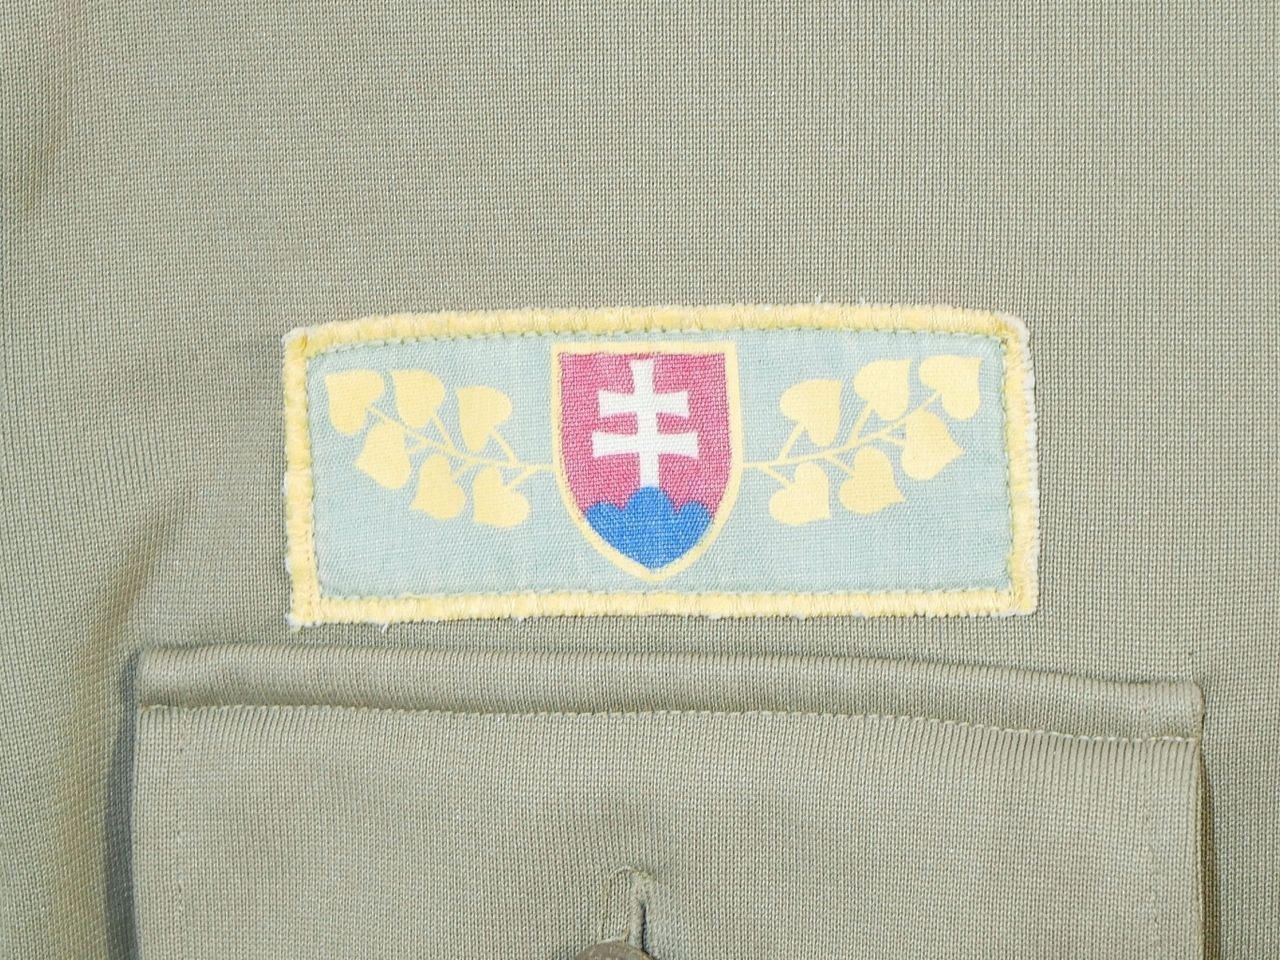 チェコスロバキア軍 ロングスリーブ シャツ クロスソードボタン スロバキアパッチ付き 中古良 画像現品